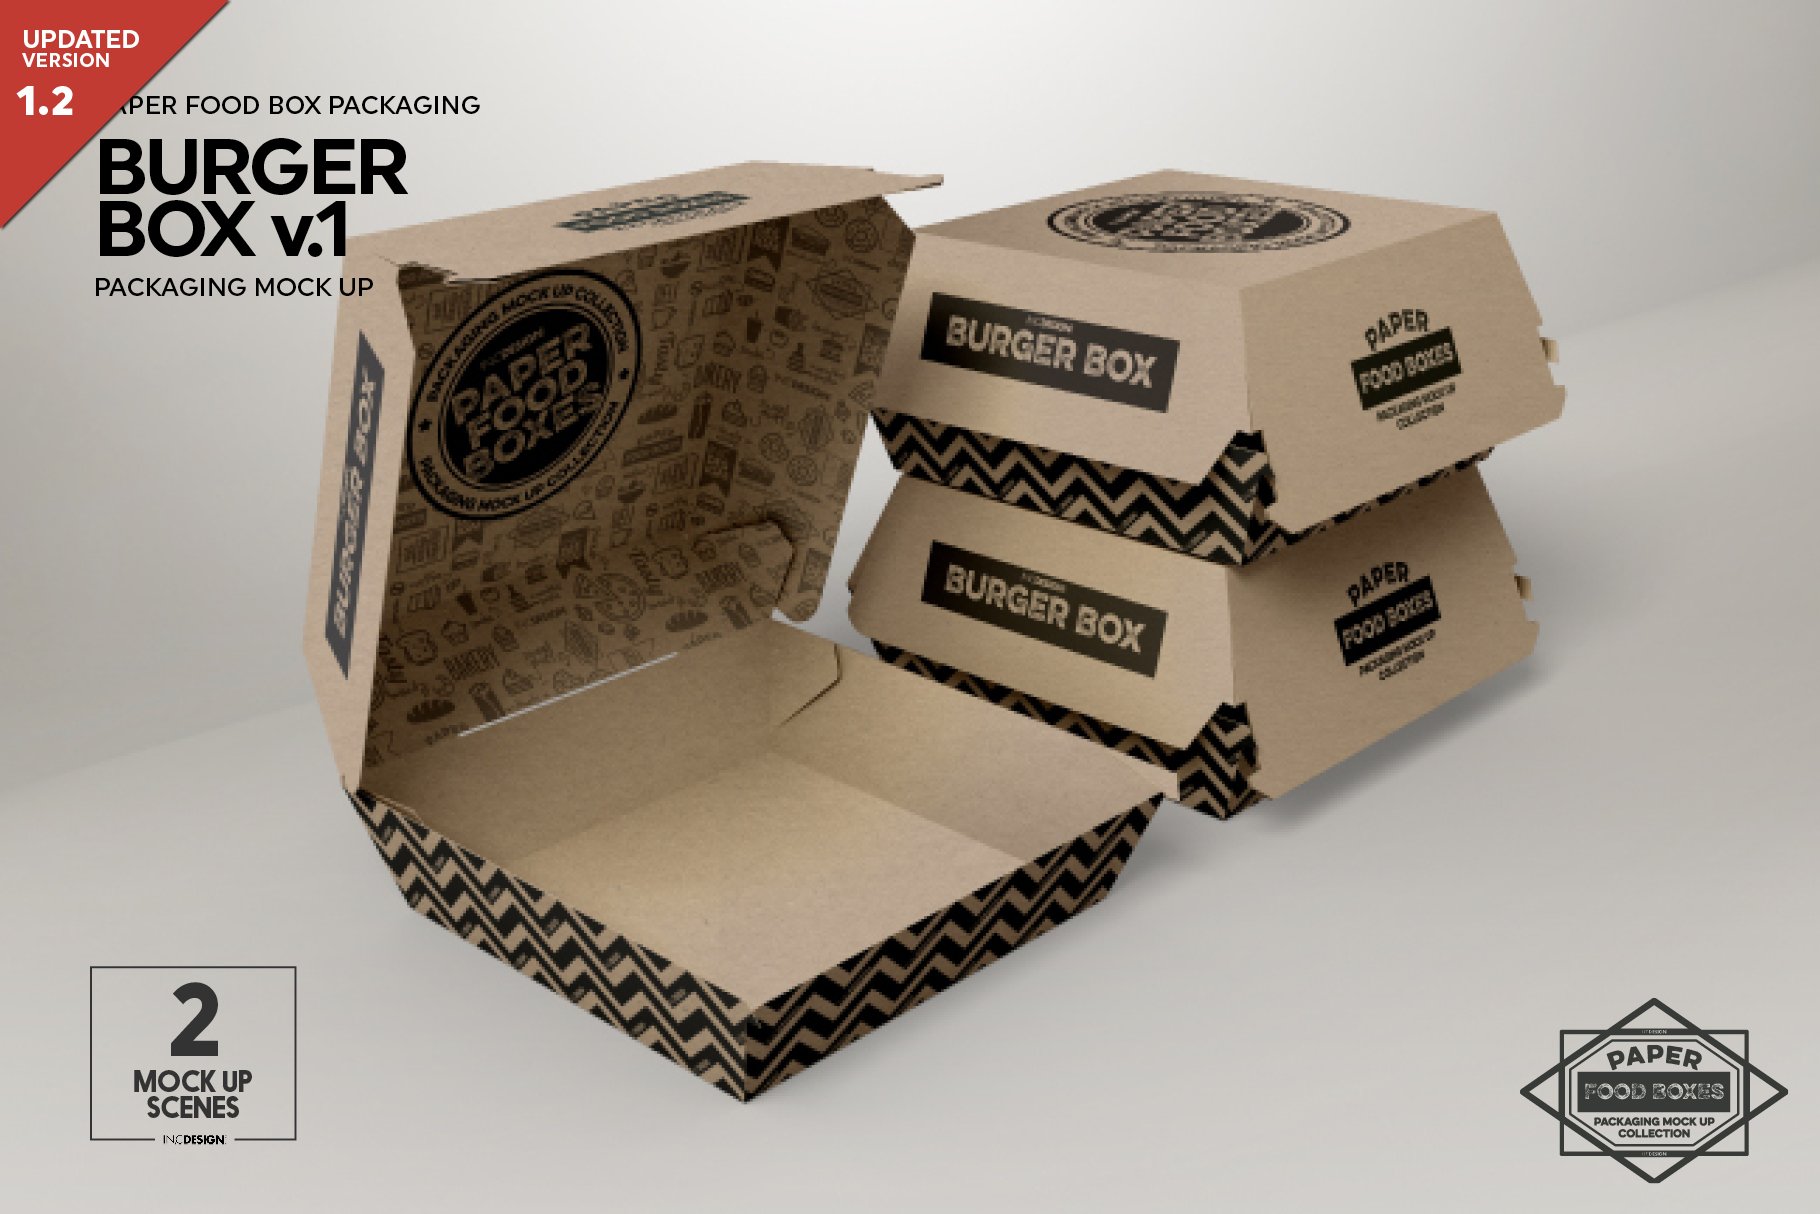 Burger Box Packaging Mockup v.1 cover image.